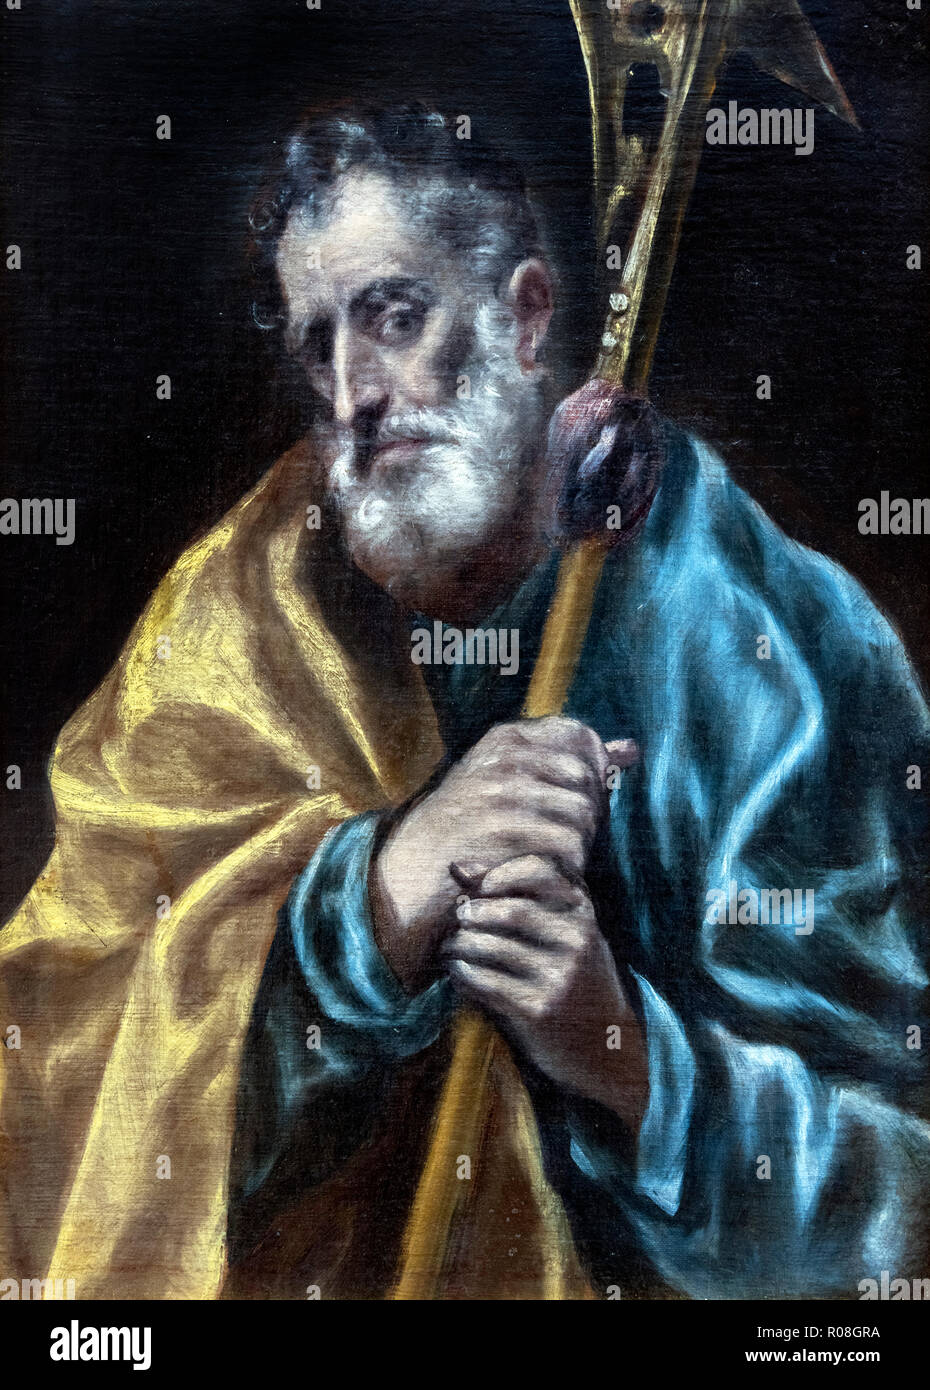 St Jude l'Apôtre par l'atelier d'El Greco, Domenikos Theotokopoulos (1541-1614), huile sur toile, c.1608-14 Banque D'Images